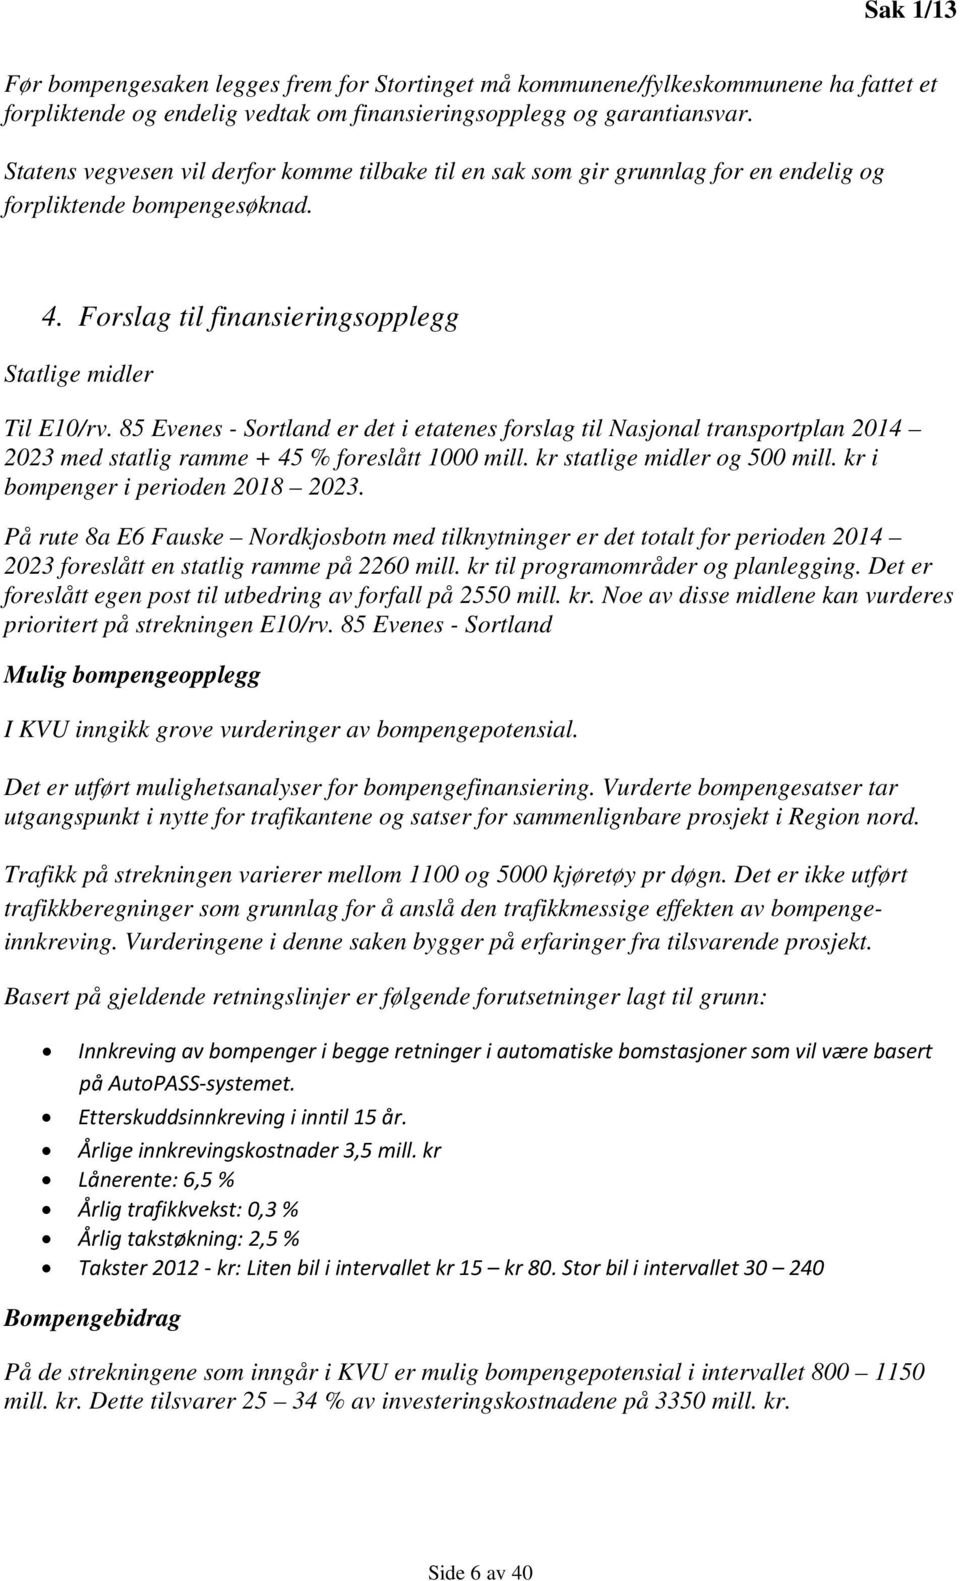 85 Evenes - Sortland er det i etatenes forslag til Nasjonal transportplan 2014 2023 med statlig ramme + 45 % foreslått 1000 mill. kr statlige midler og 500 mill. kr i bompenger i perioden 2018 2023.